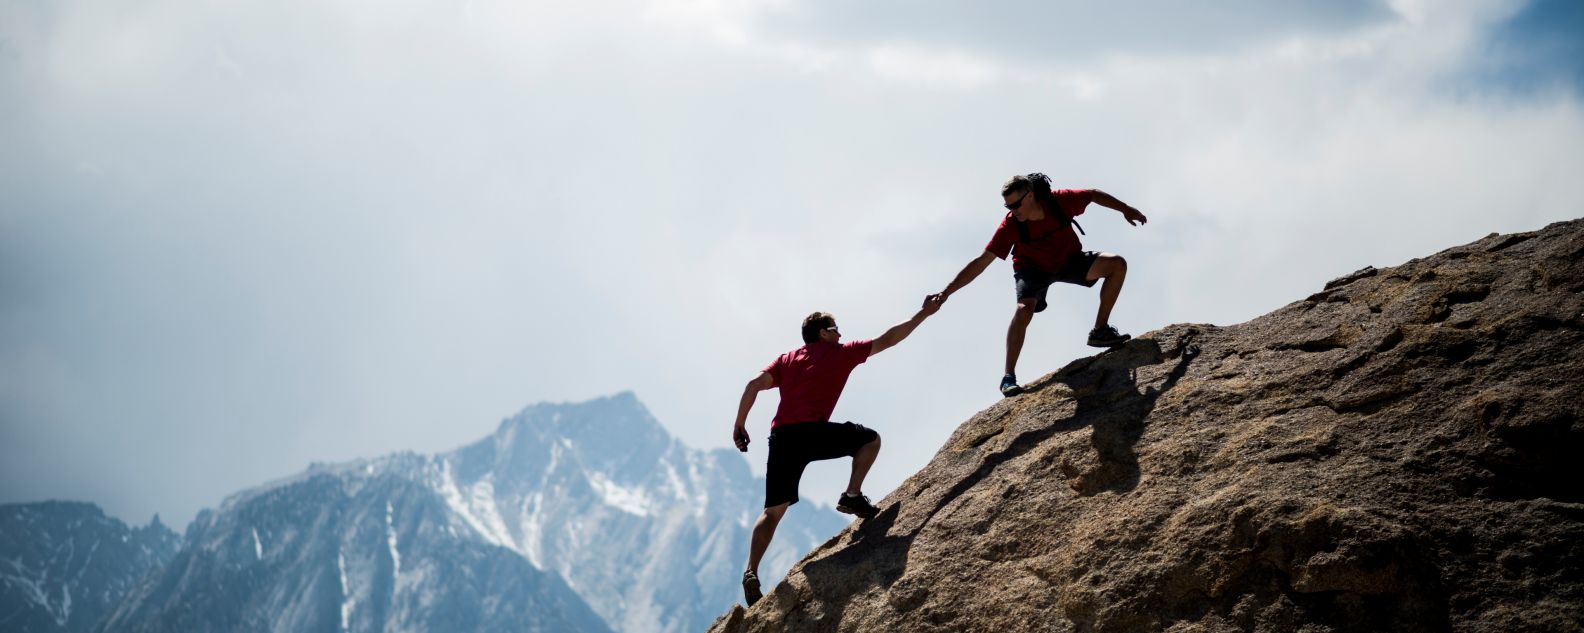 一名登山者帮助同伴登上巨石的顶峰 